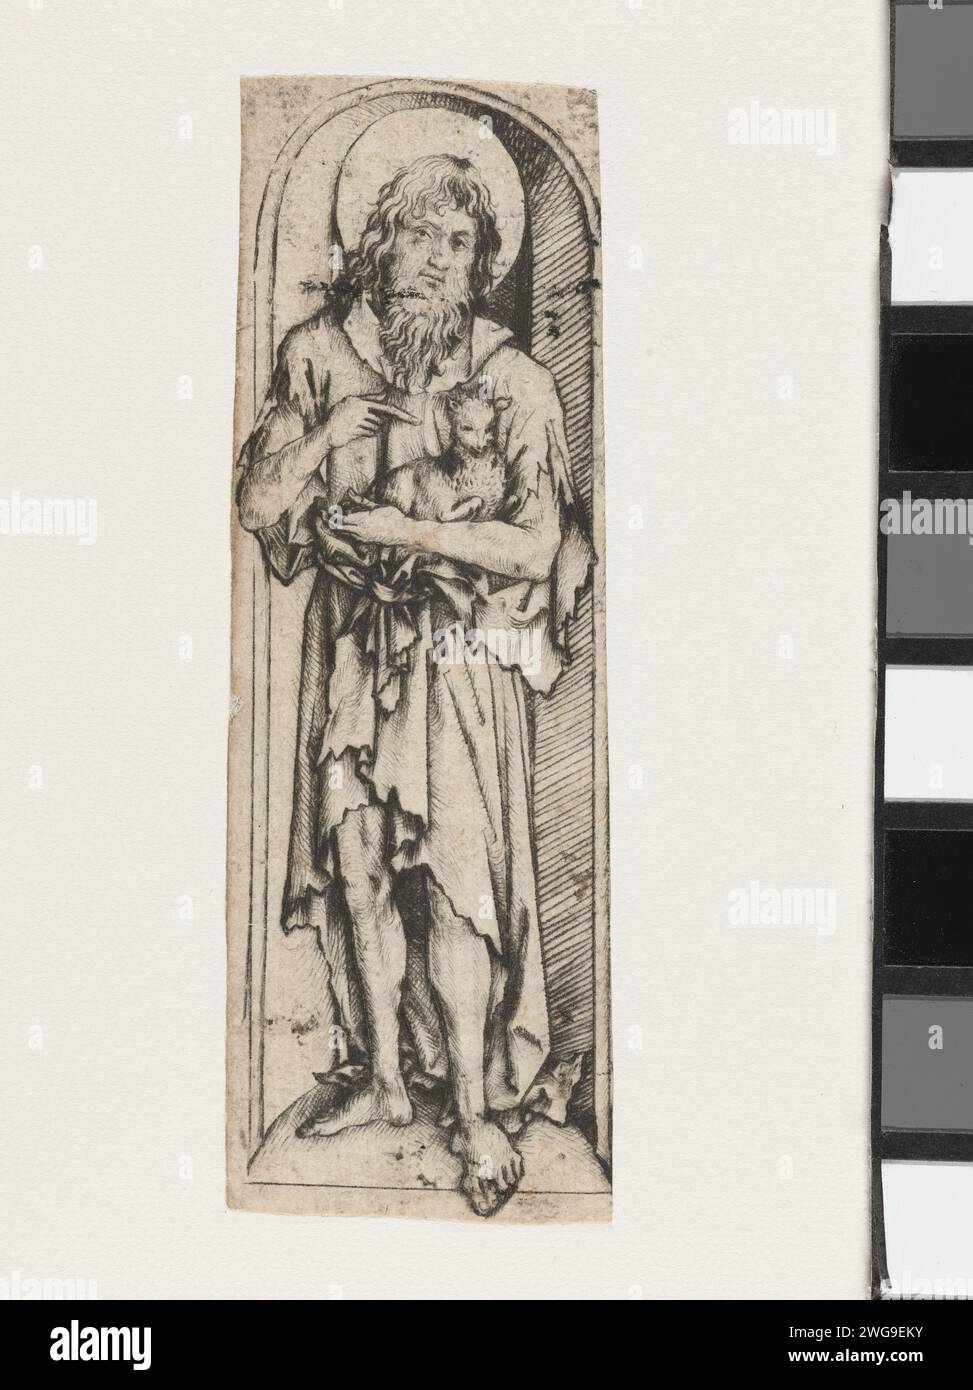 Johannes de Boper, maître du cabinet d'Amsterdam, 1485 - 1490 estampe Jean le Baptiste avec de l'agneau sur le bras, debout dans la niche. Allemagne papier point sec Jean le Baptiste ; attributs possibles : livre, croix de roseau, coupe baptismale, nid d'abeille, agneau, personnel Banque D'Images